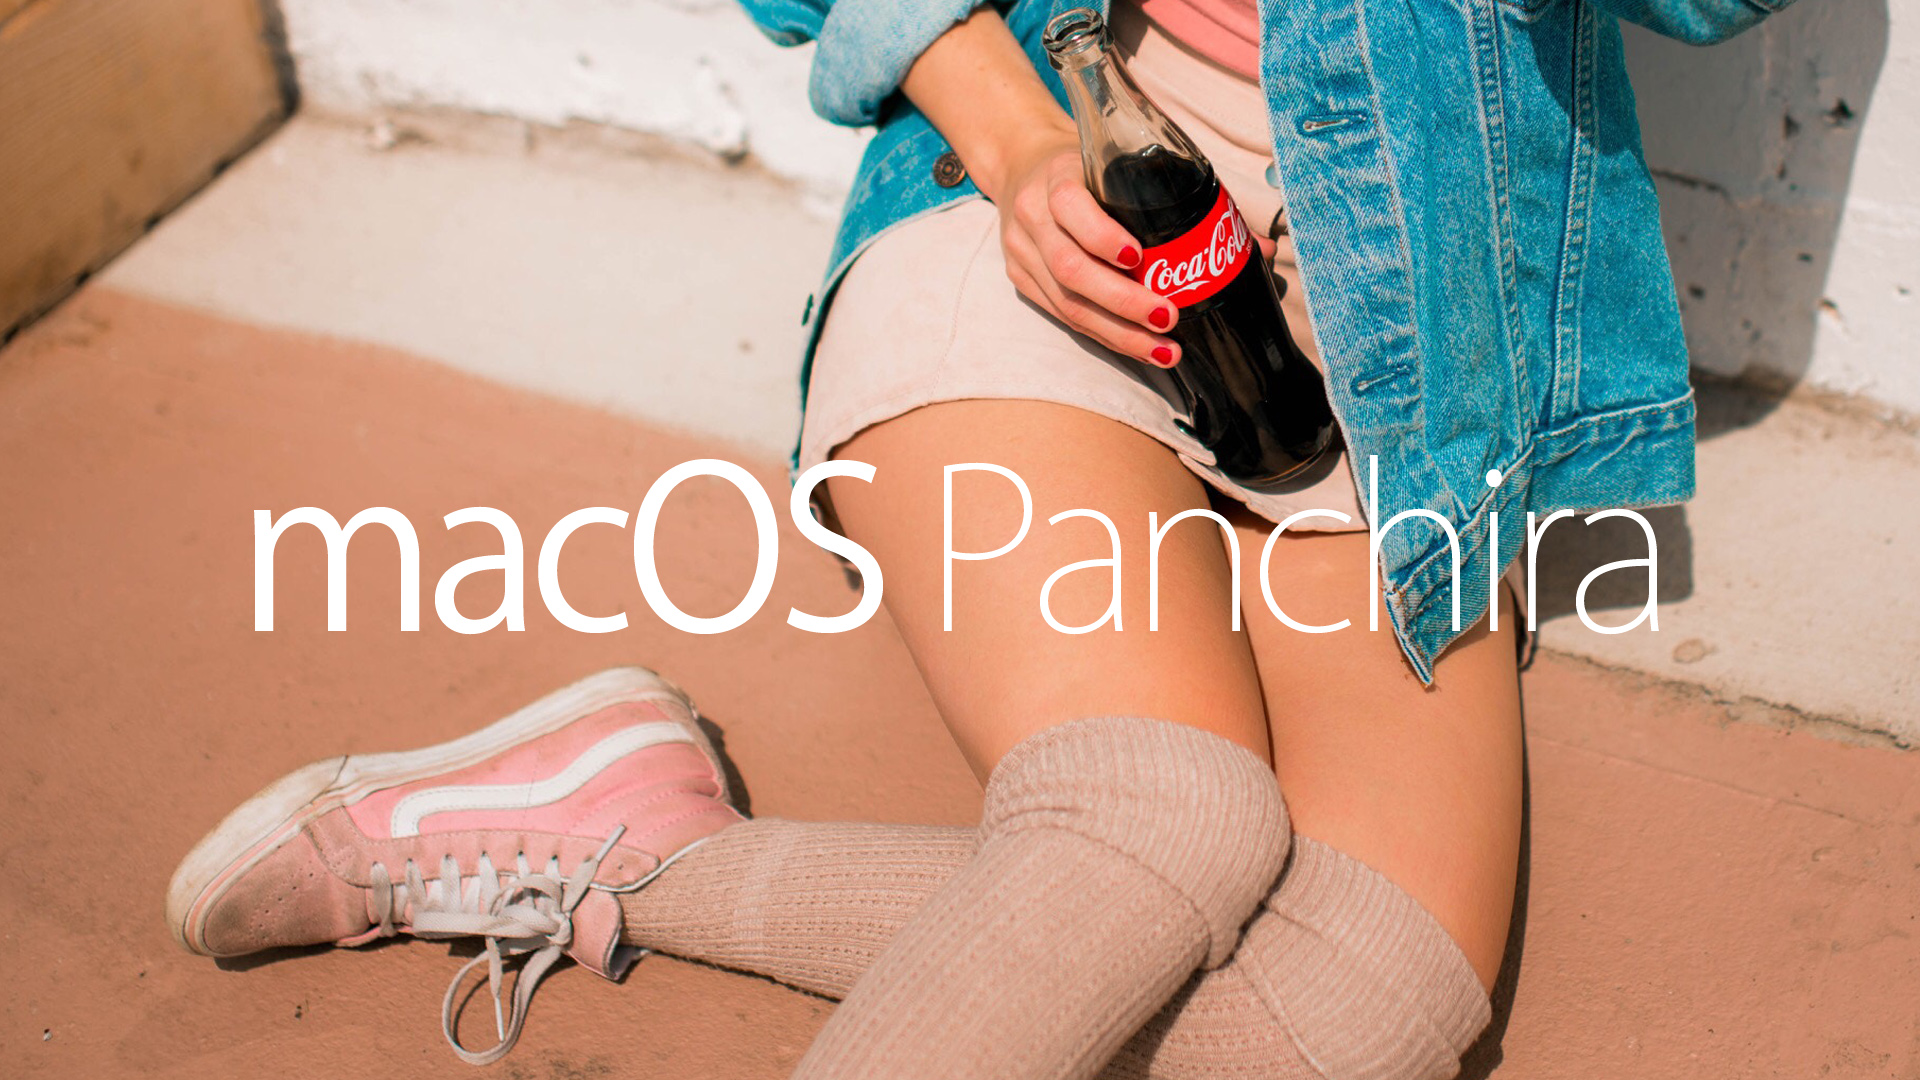 Mac OS Panchira